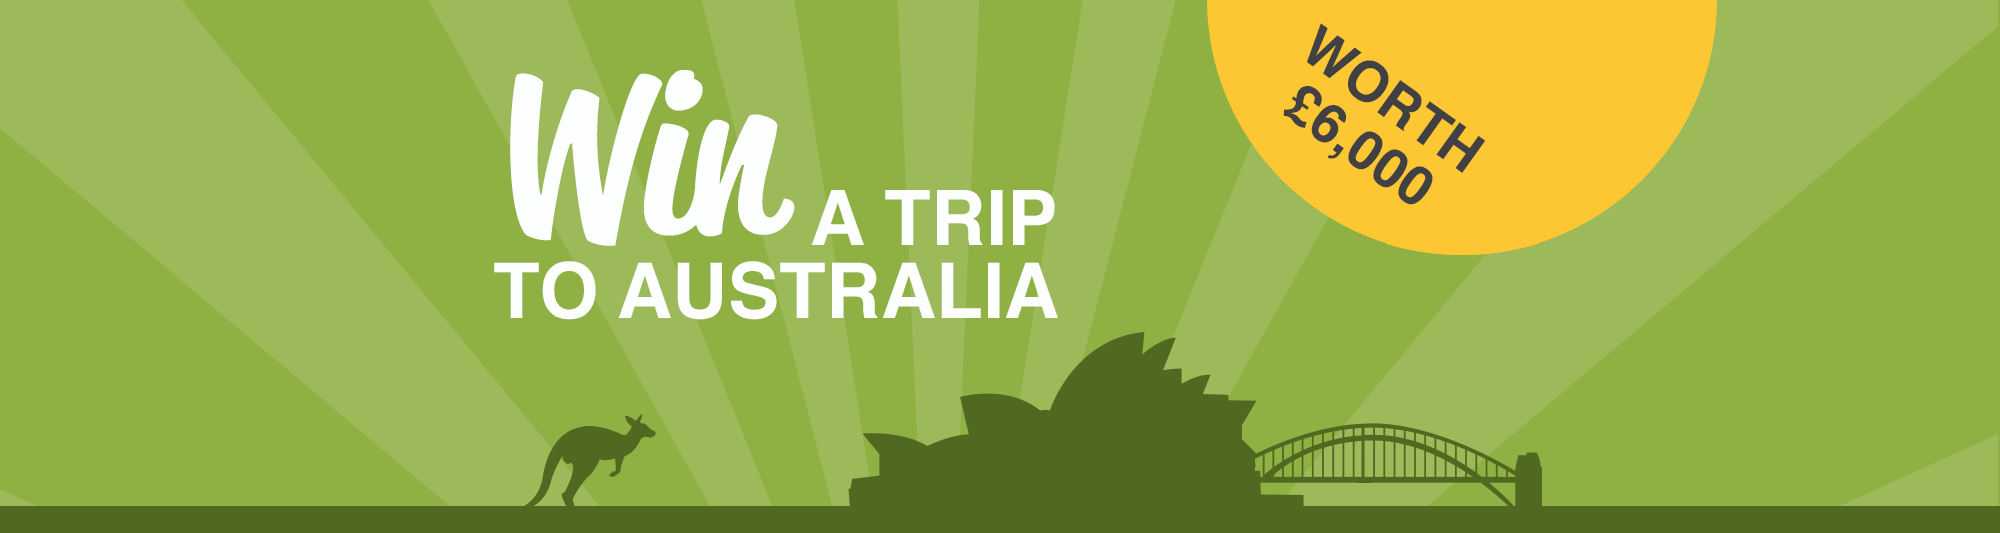 GoSkippy: Win a family trip to Australia